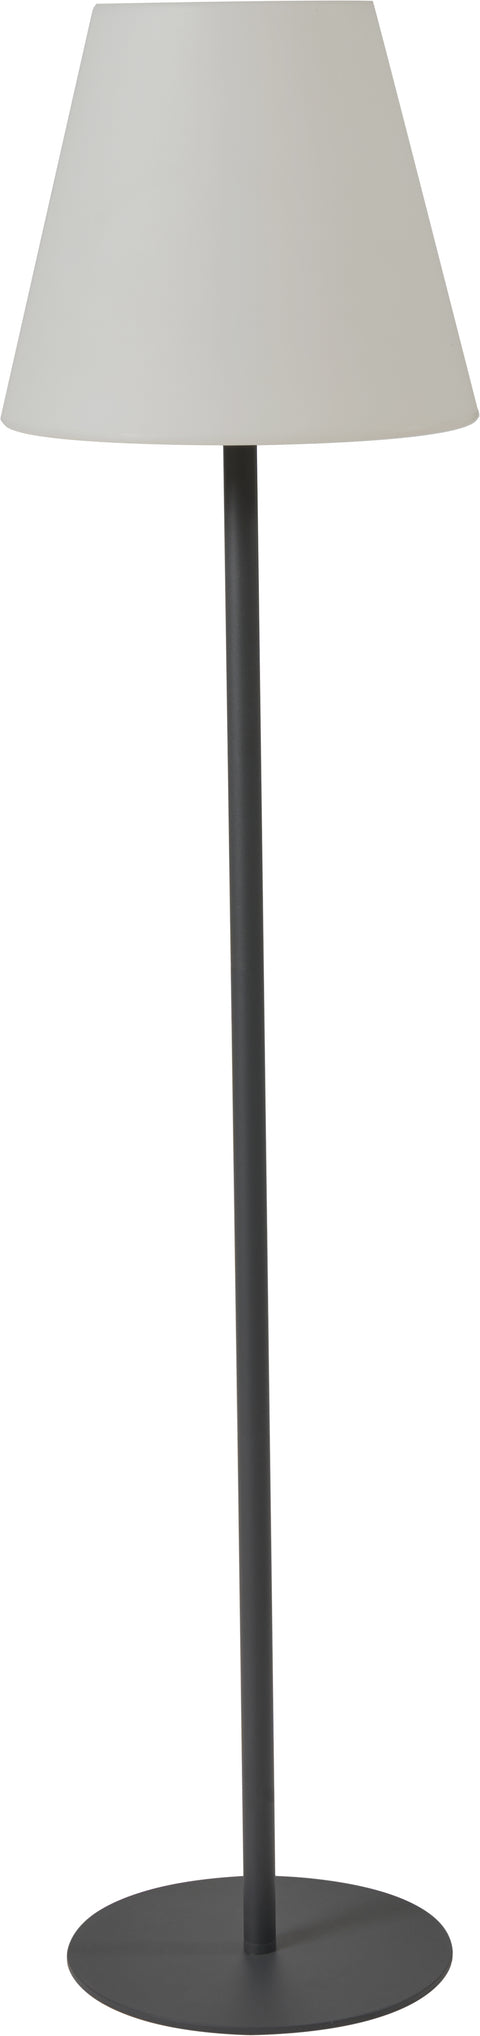 Grey Metal Outdoor Lamp